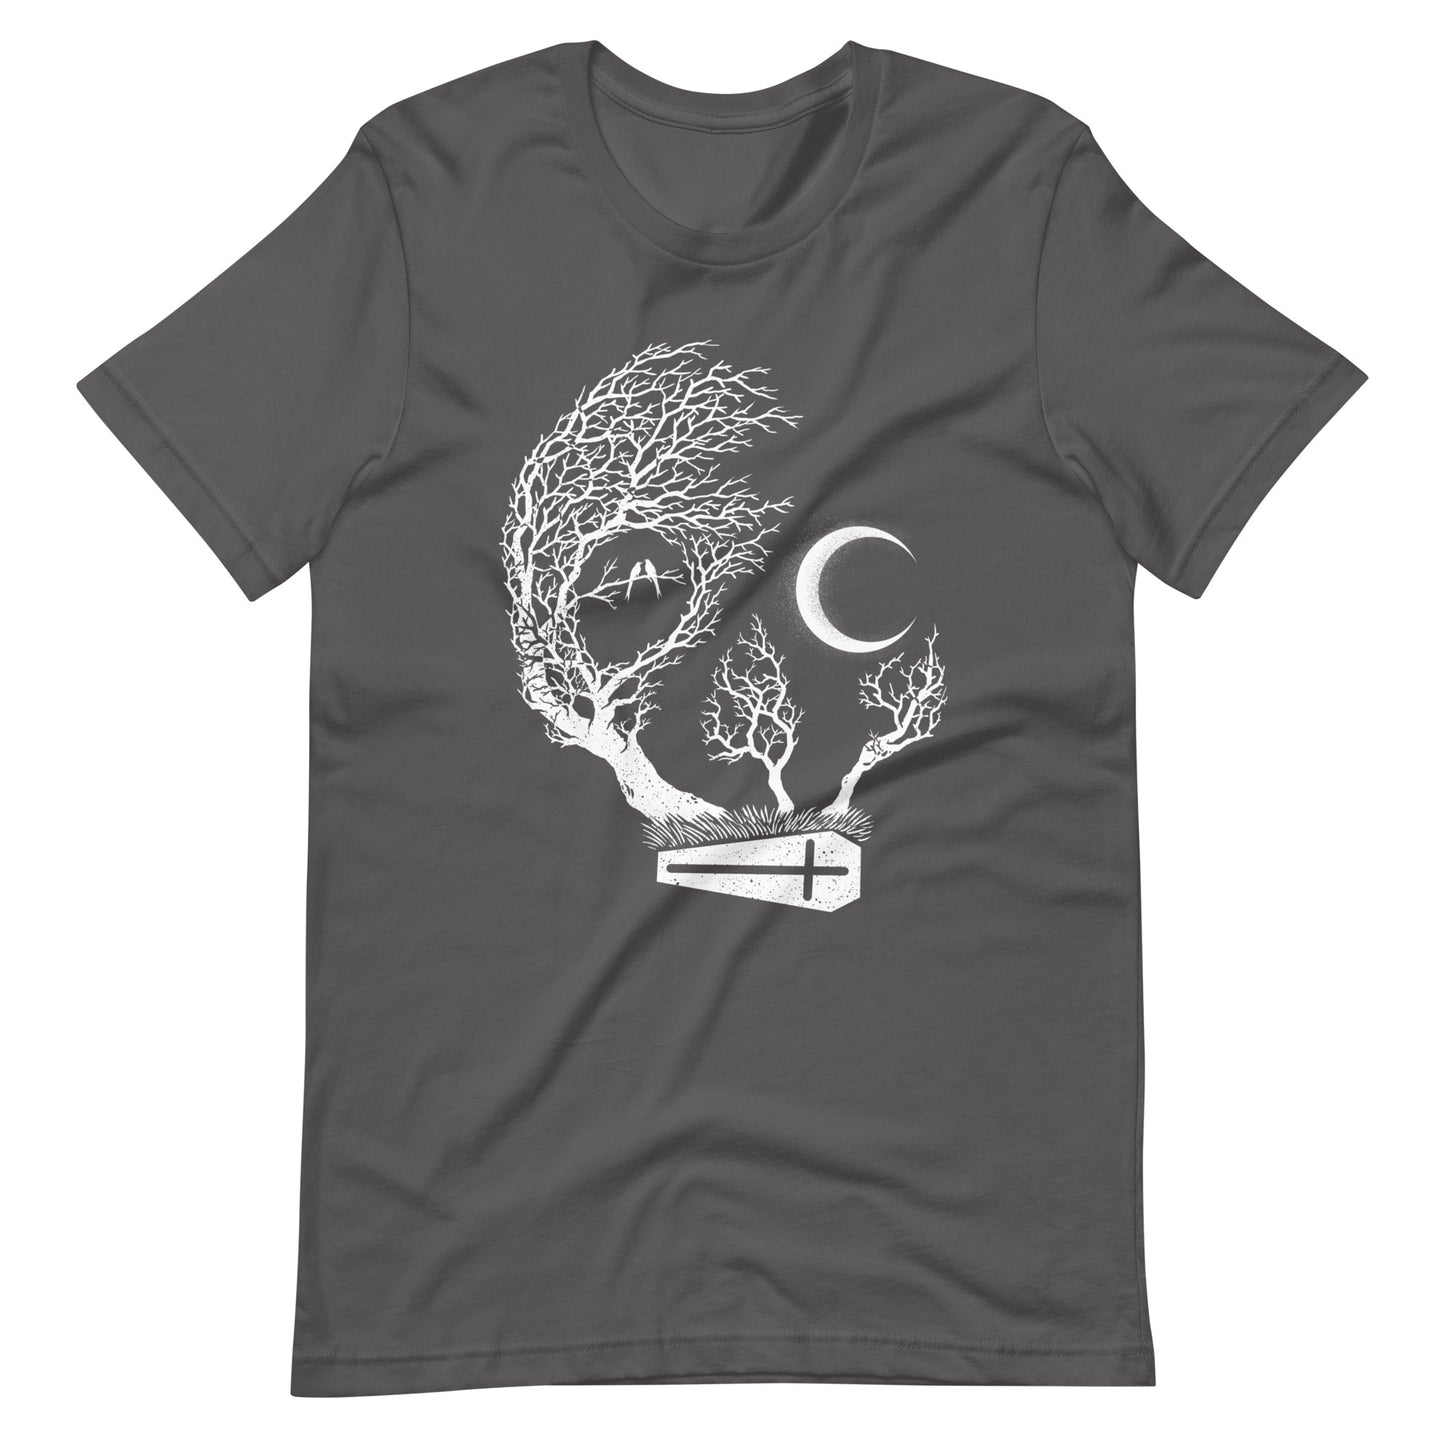 Friday Night Death - Men's t-shirt - Asphalt Front